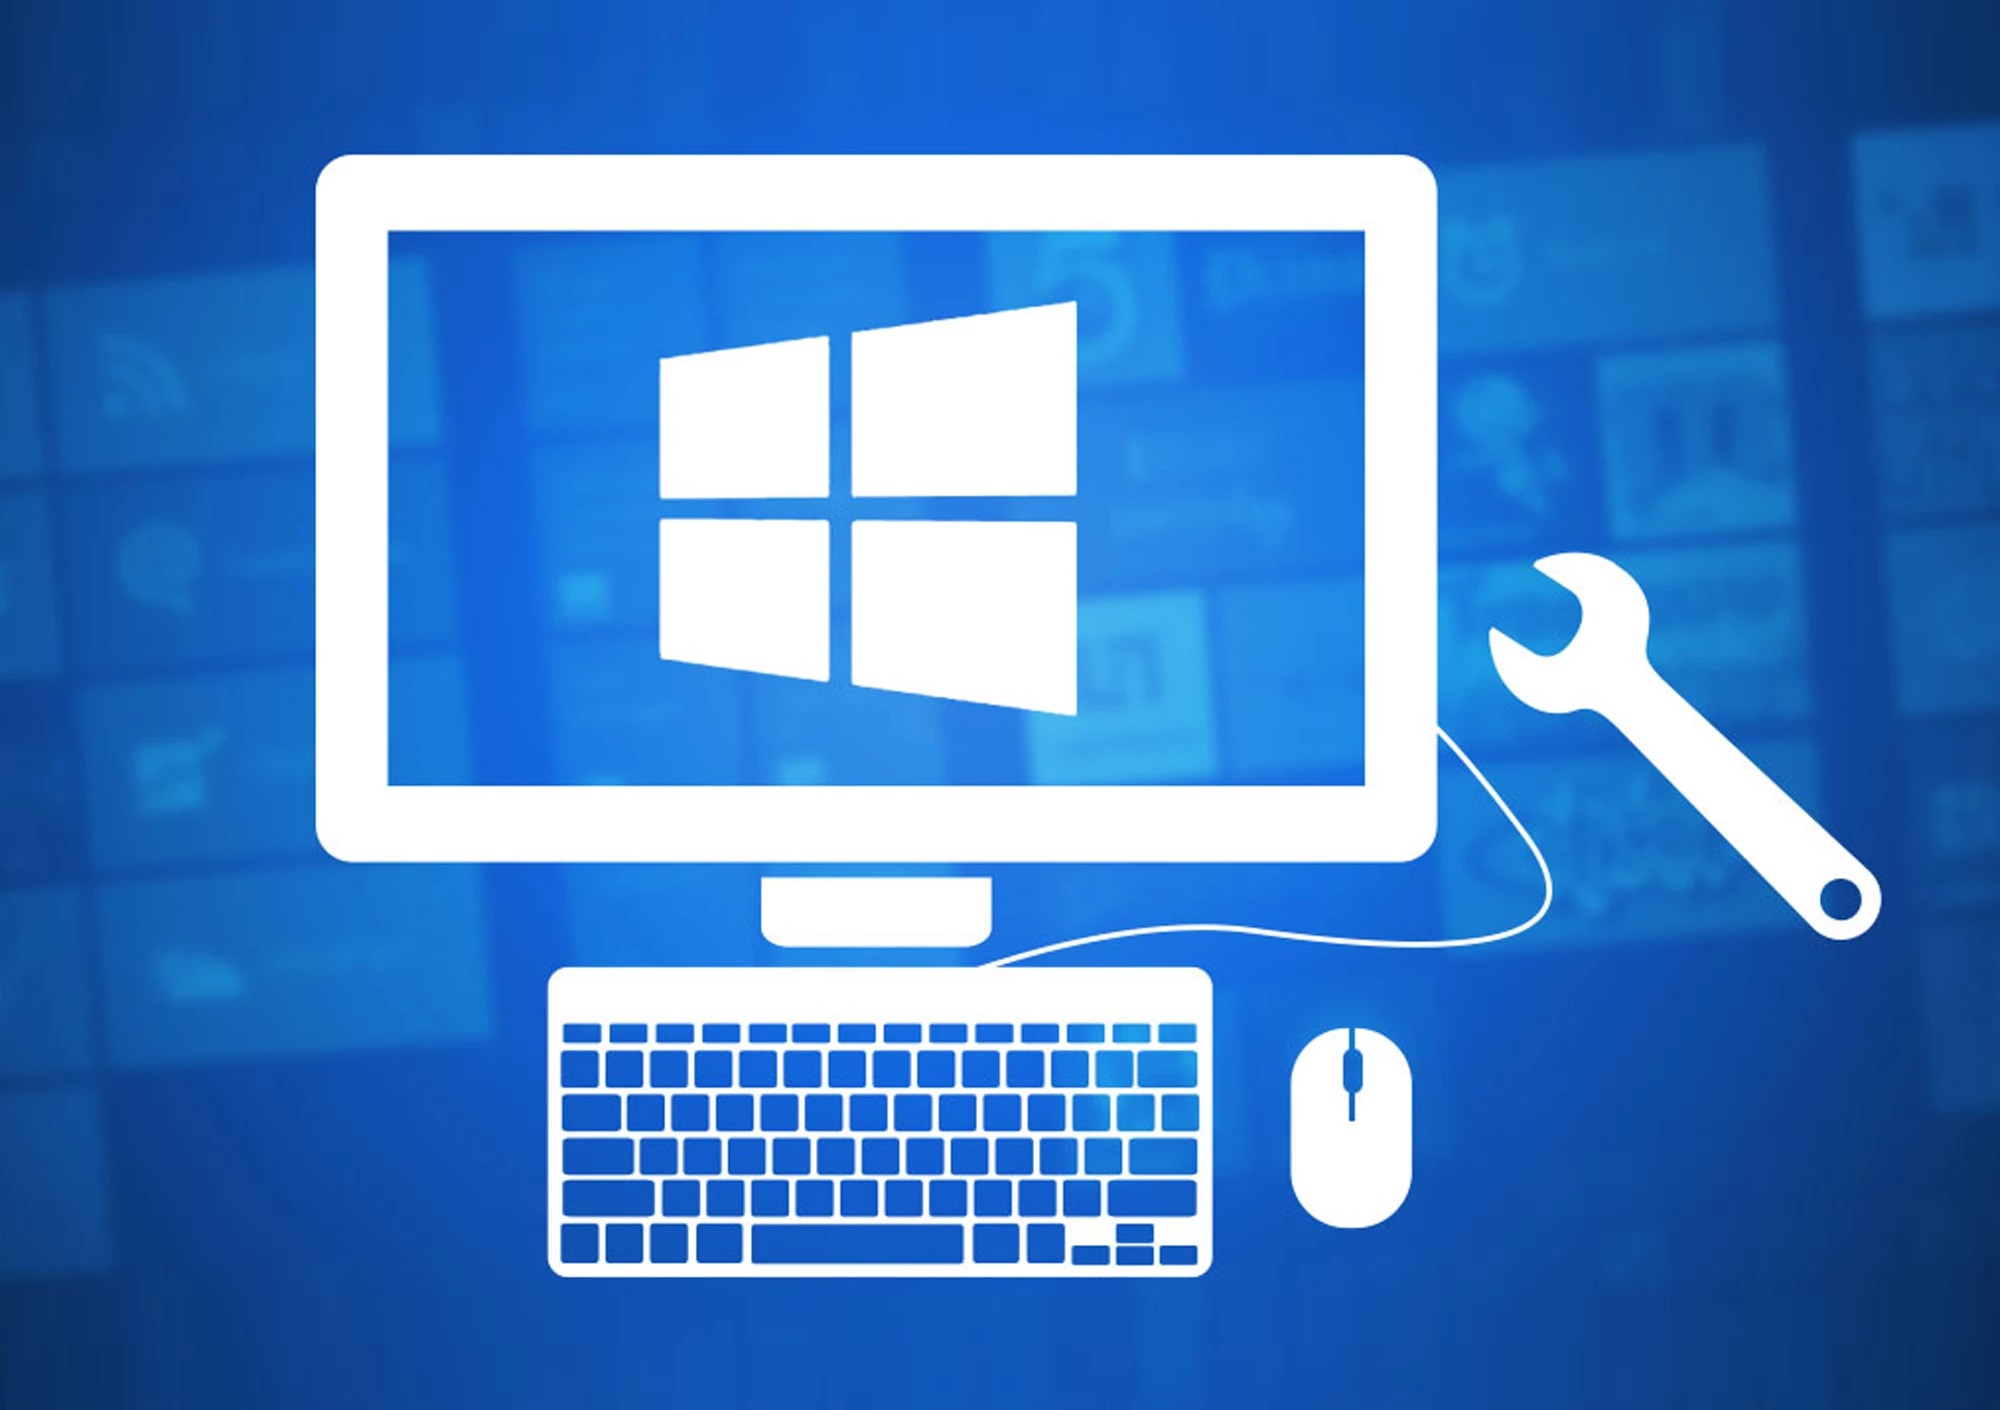 Установка Windows с помощью специалистов или самостоятельно: плюсы и минусы